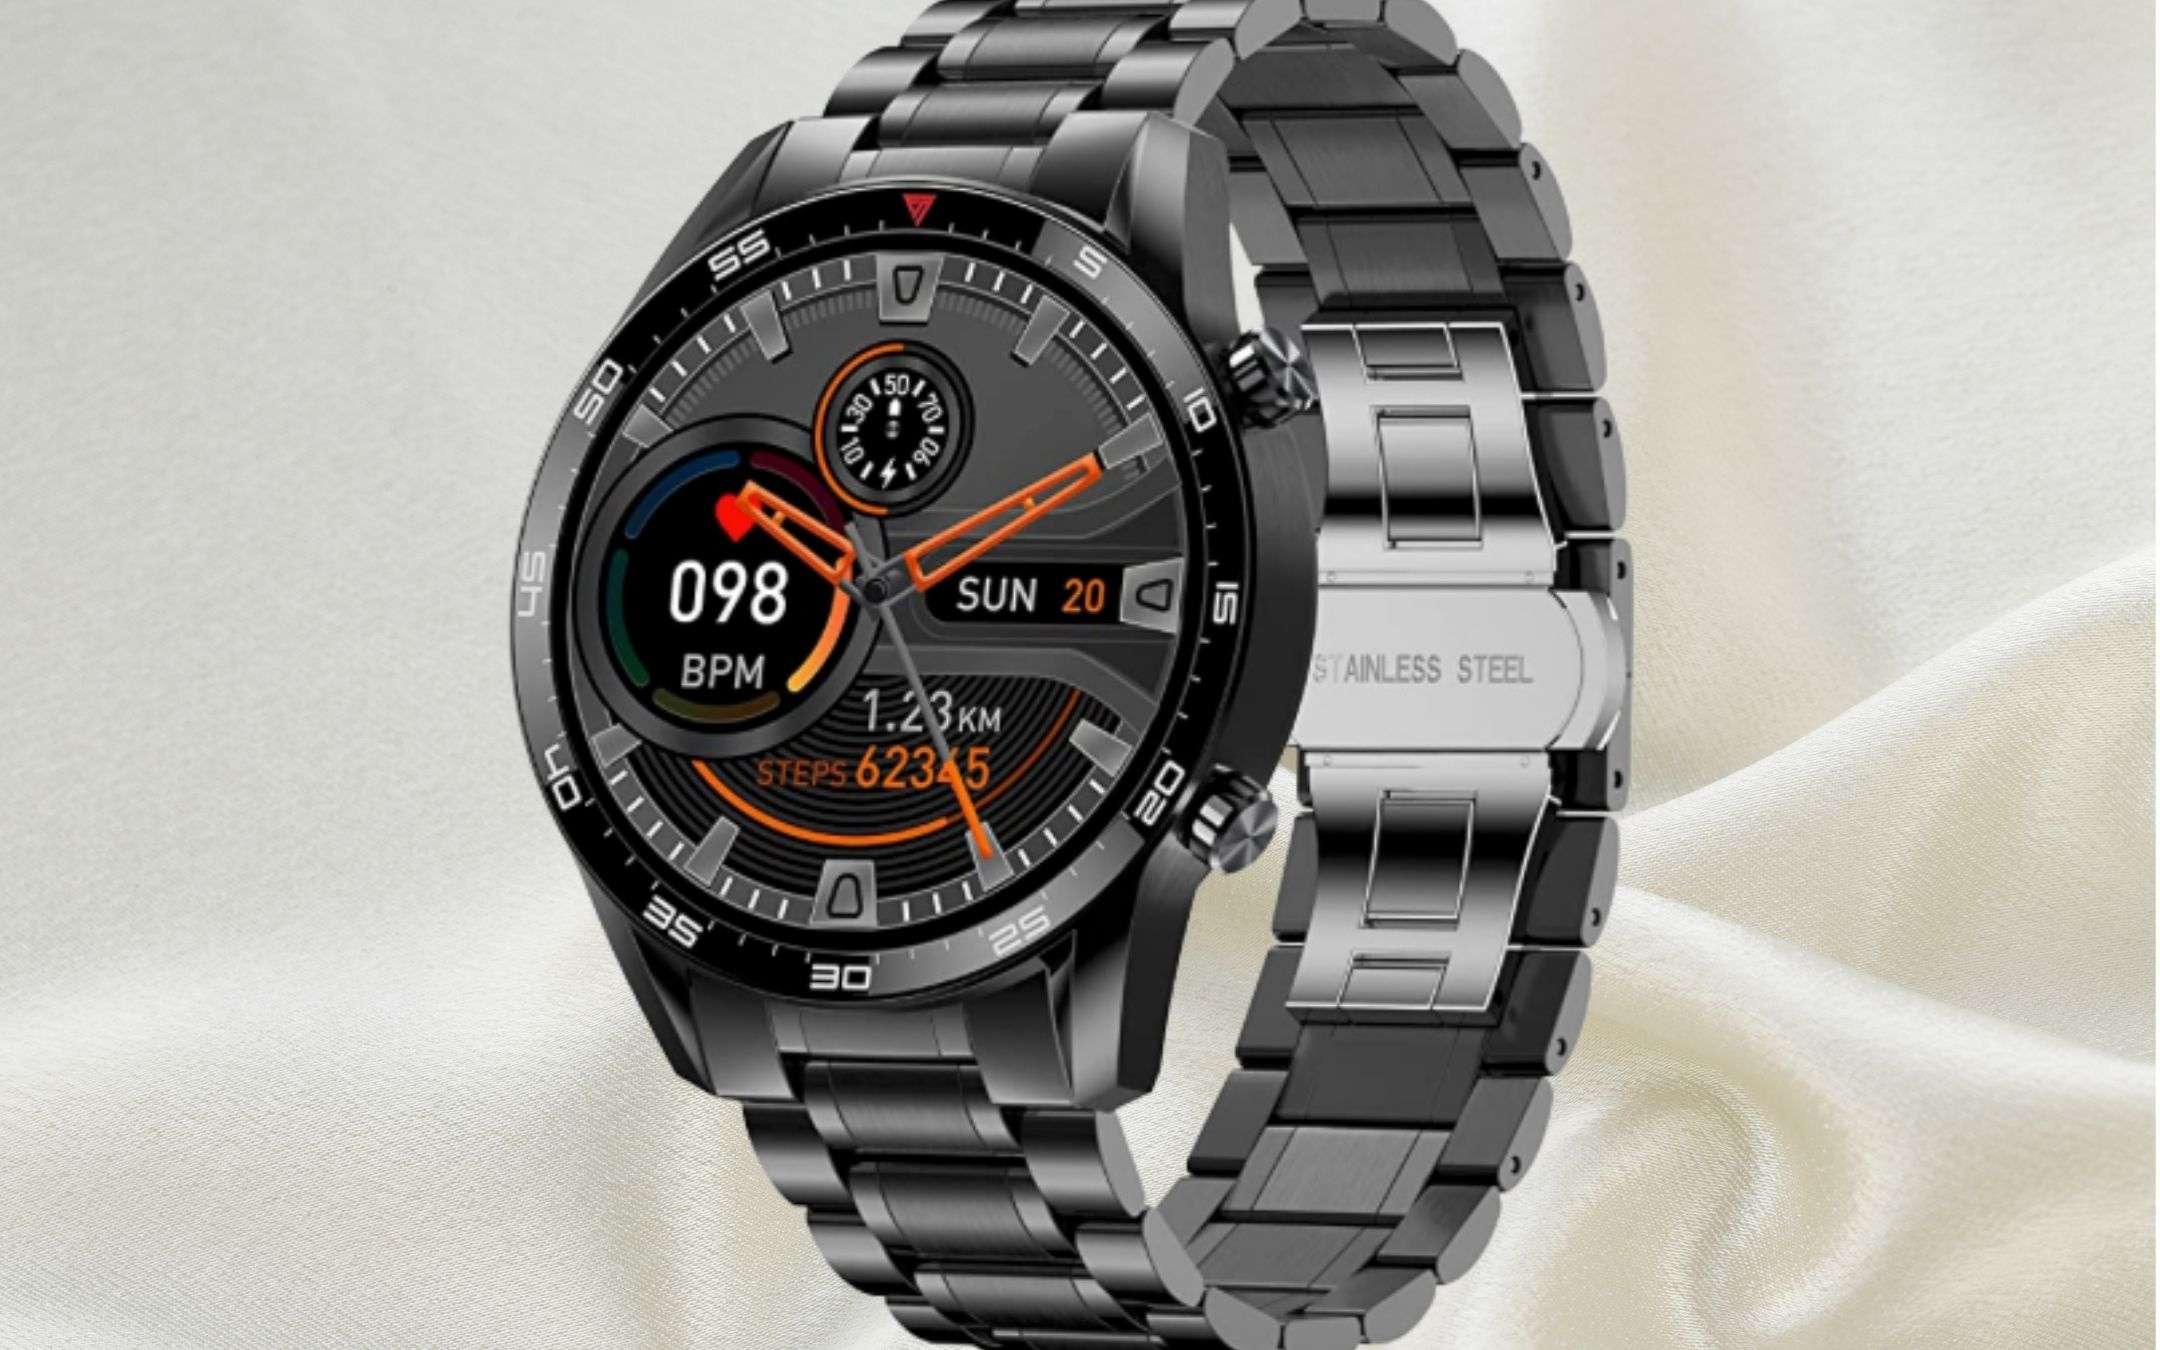 Smartwatch in ACCIAIO: lusso al polso con 54€ (solo Amazon)